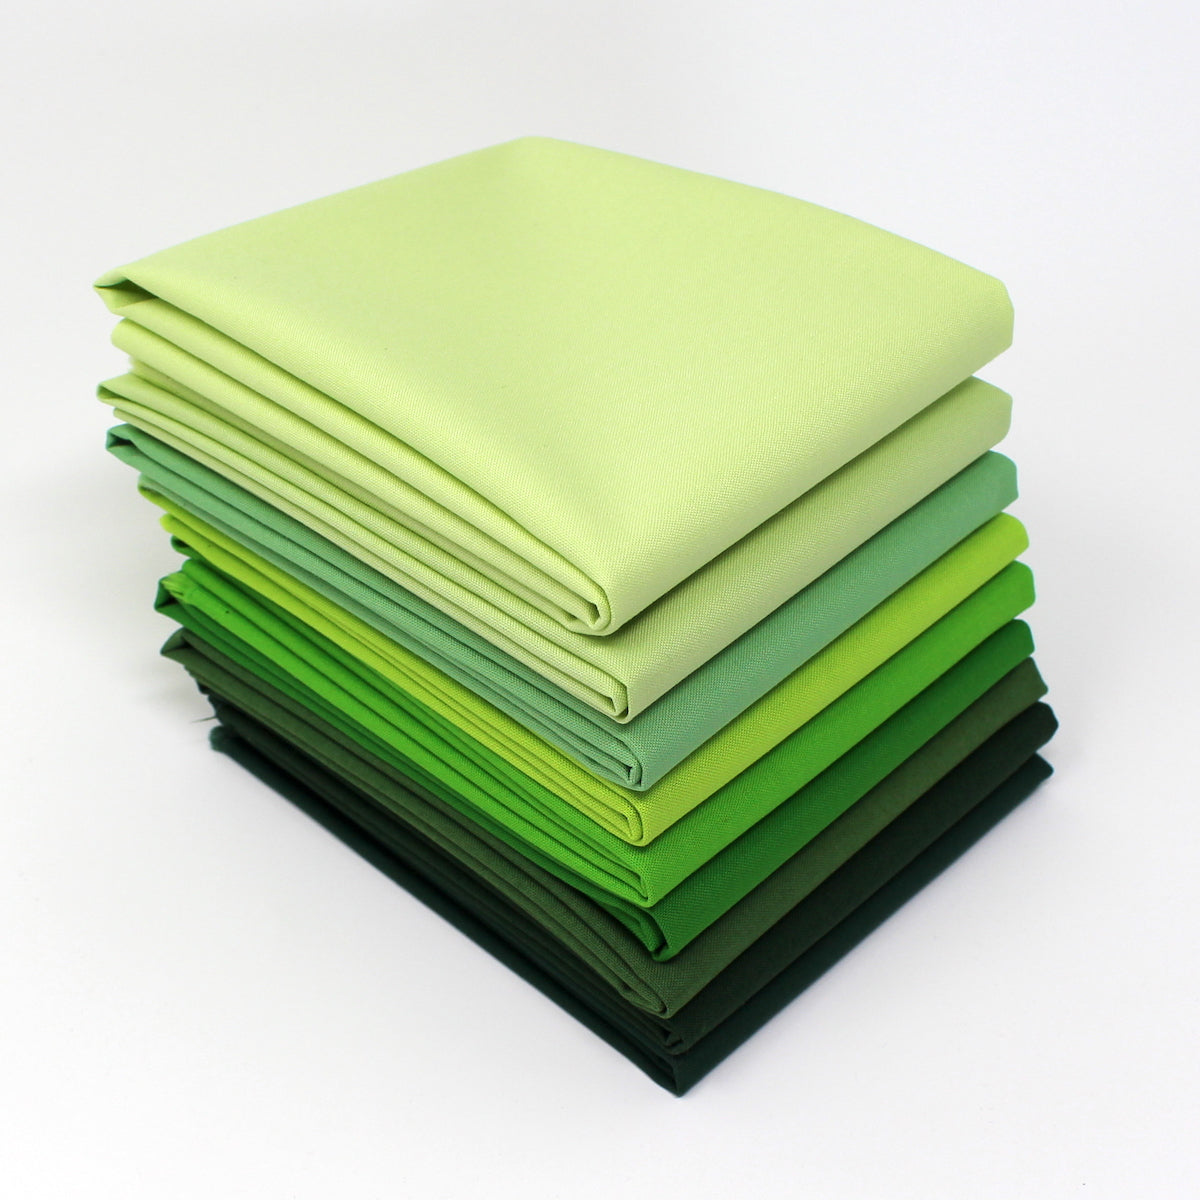 CraftsFabrics 8pcs Green Floral Fabric Fat Quarters Bundle, 100% Cotto